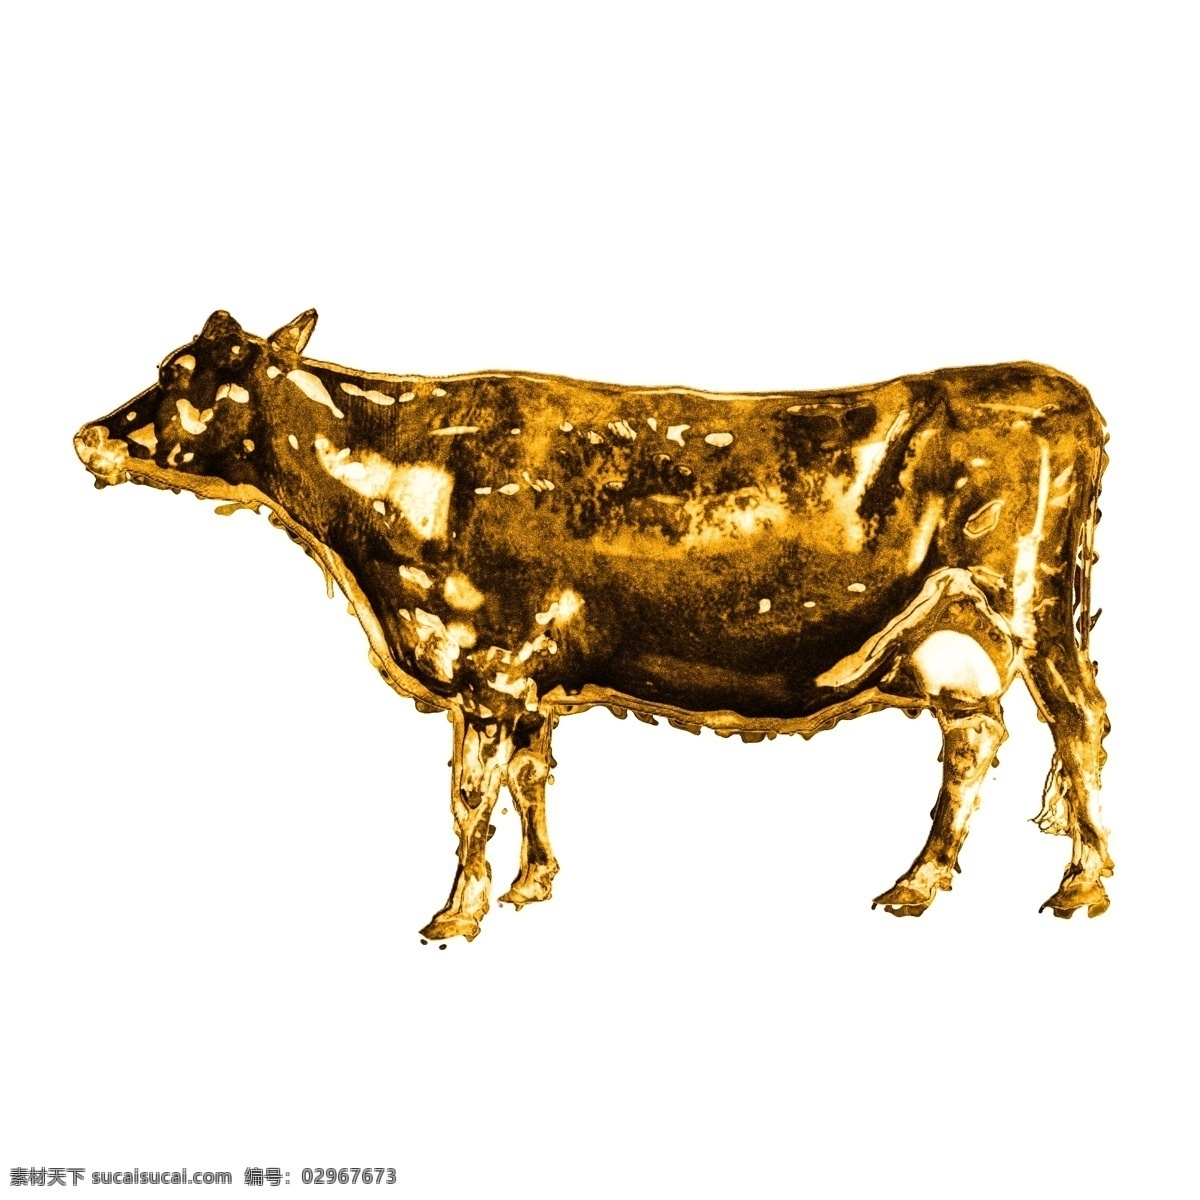 黄金 元素 金牛 雕塑 贴图 金属光泽 金属材质 立体底纹 富贵 黄金母牛 黄金公牛 金属表面 质感金属 金牛雕塑